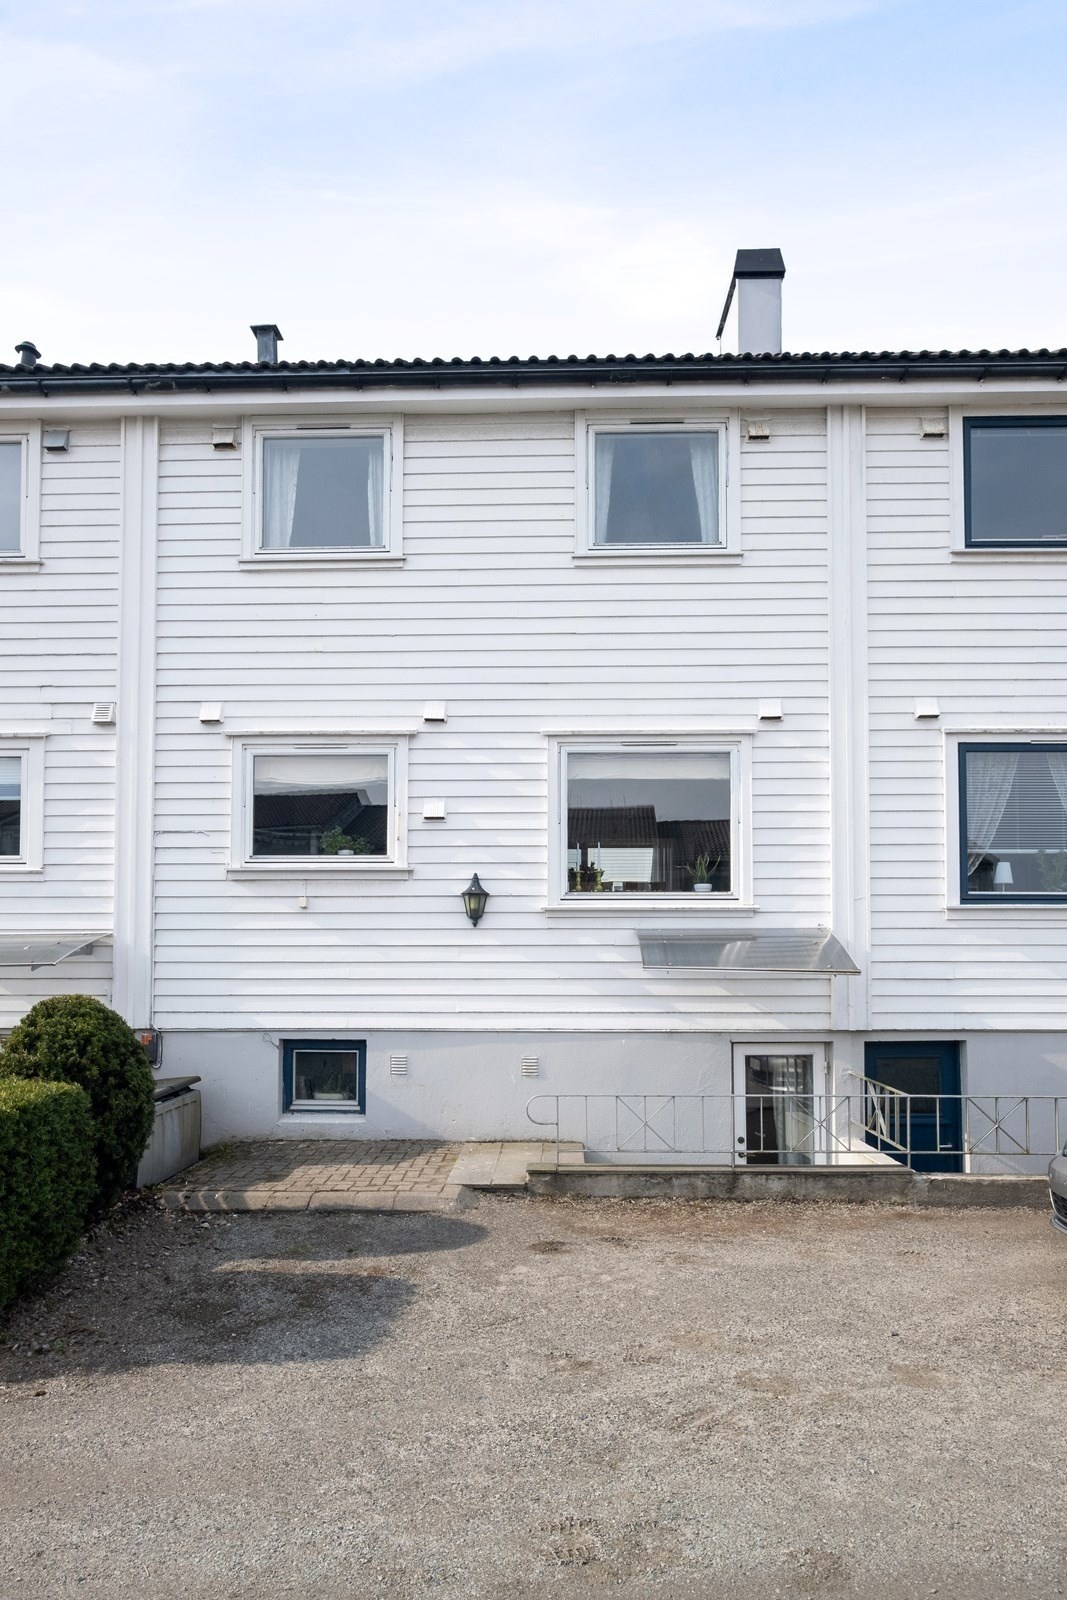 Søknadprosess: Bytte ut vindu til inngangsdør i rekkehus - nøytral- nåstatus.jpg - Amundsen